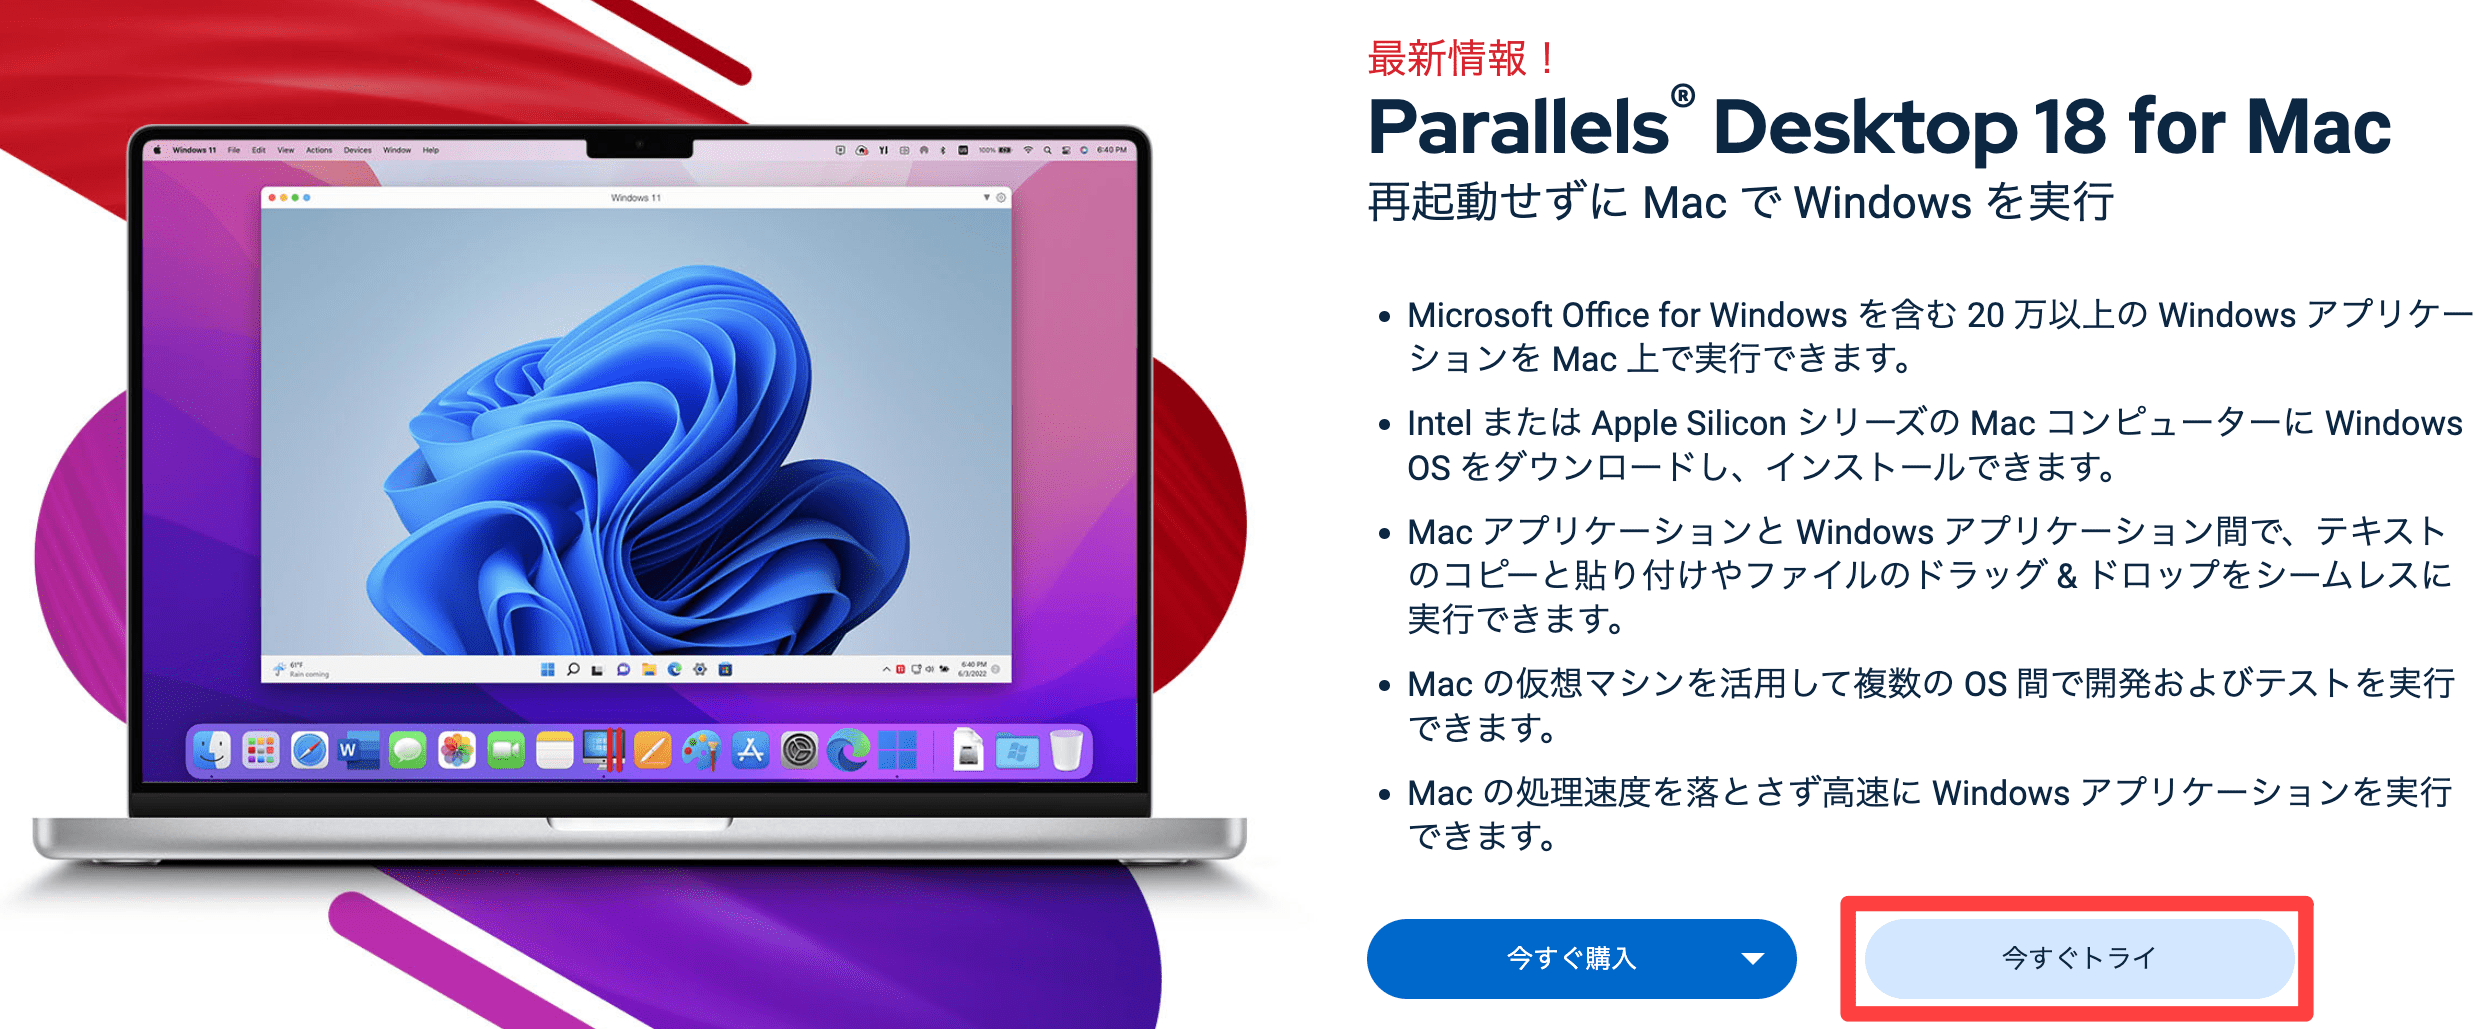 Parallels Desktop 18を今すぐトライ